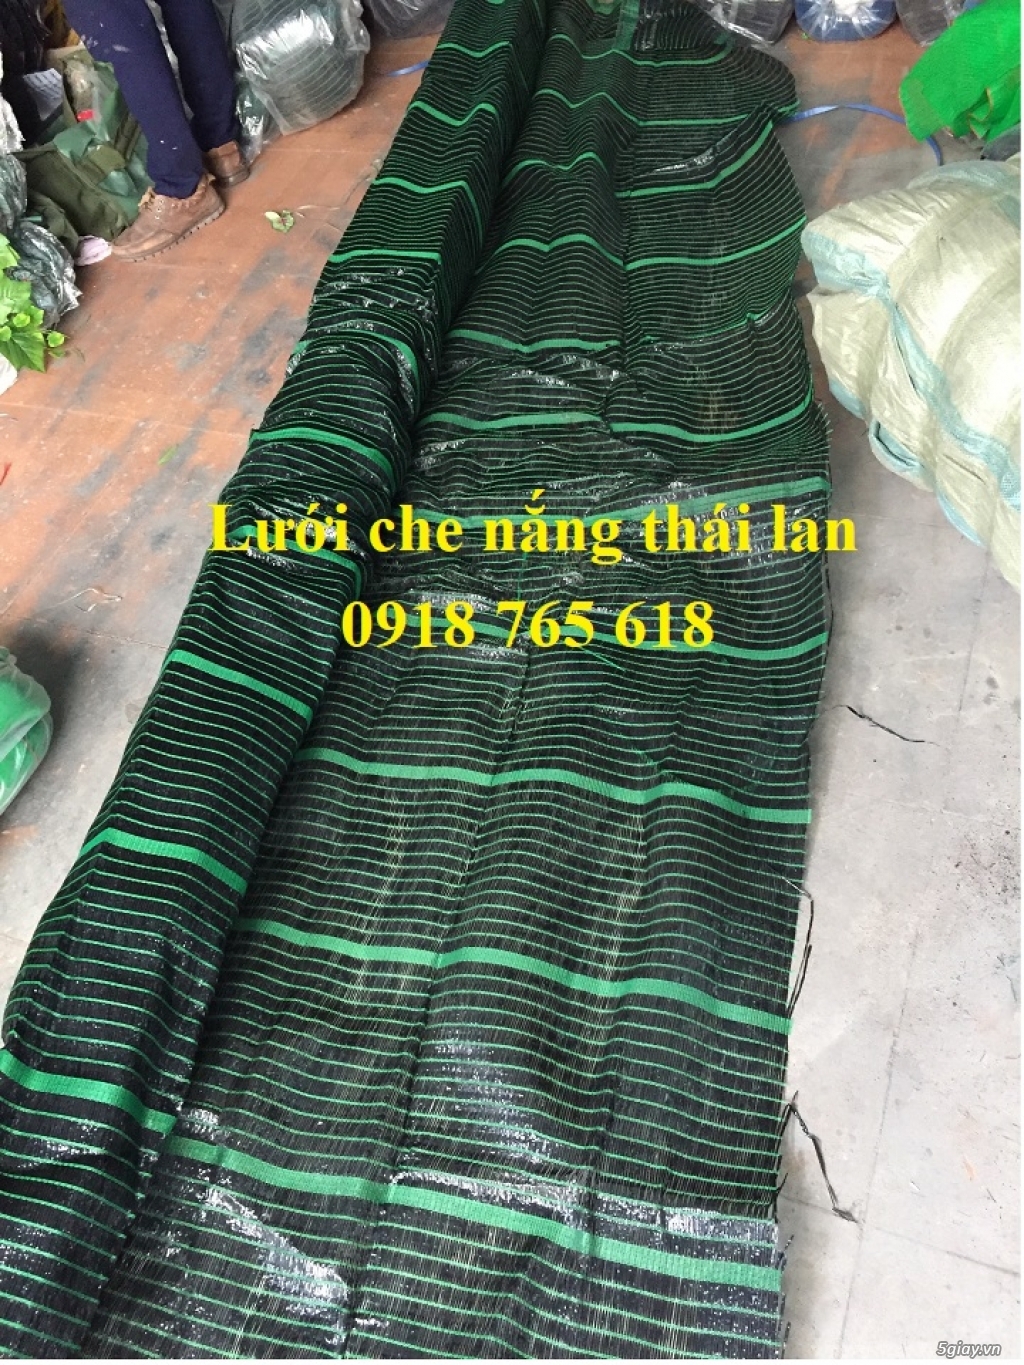 Lưới che nắng thái lan chuyên dùng cho cây cảnh, nhà vườn tại Hà Nội